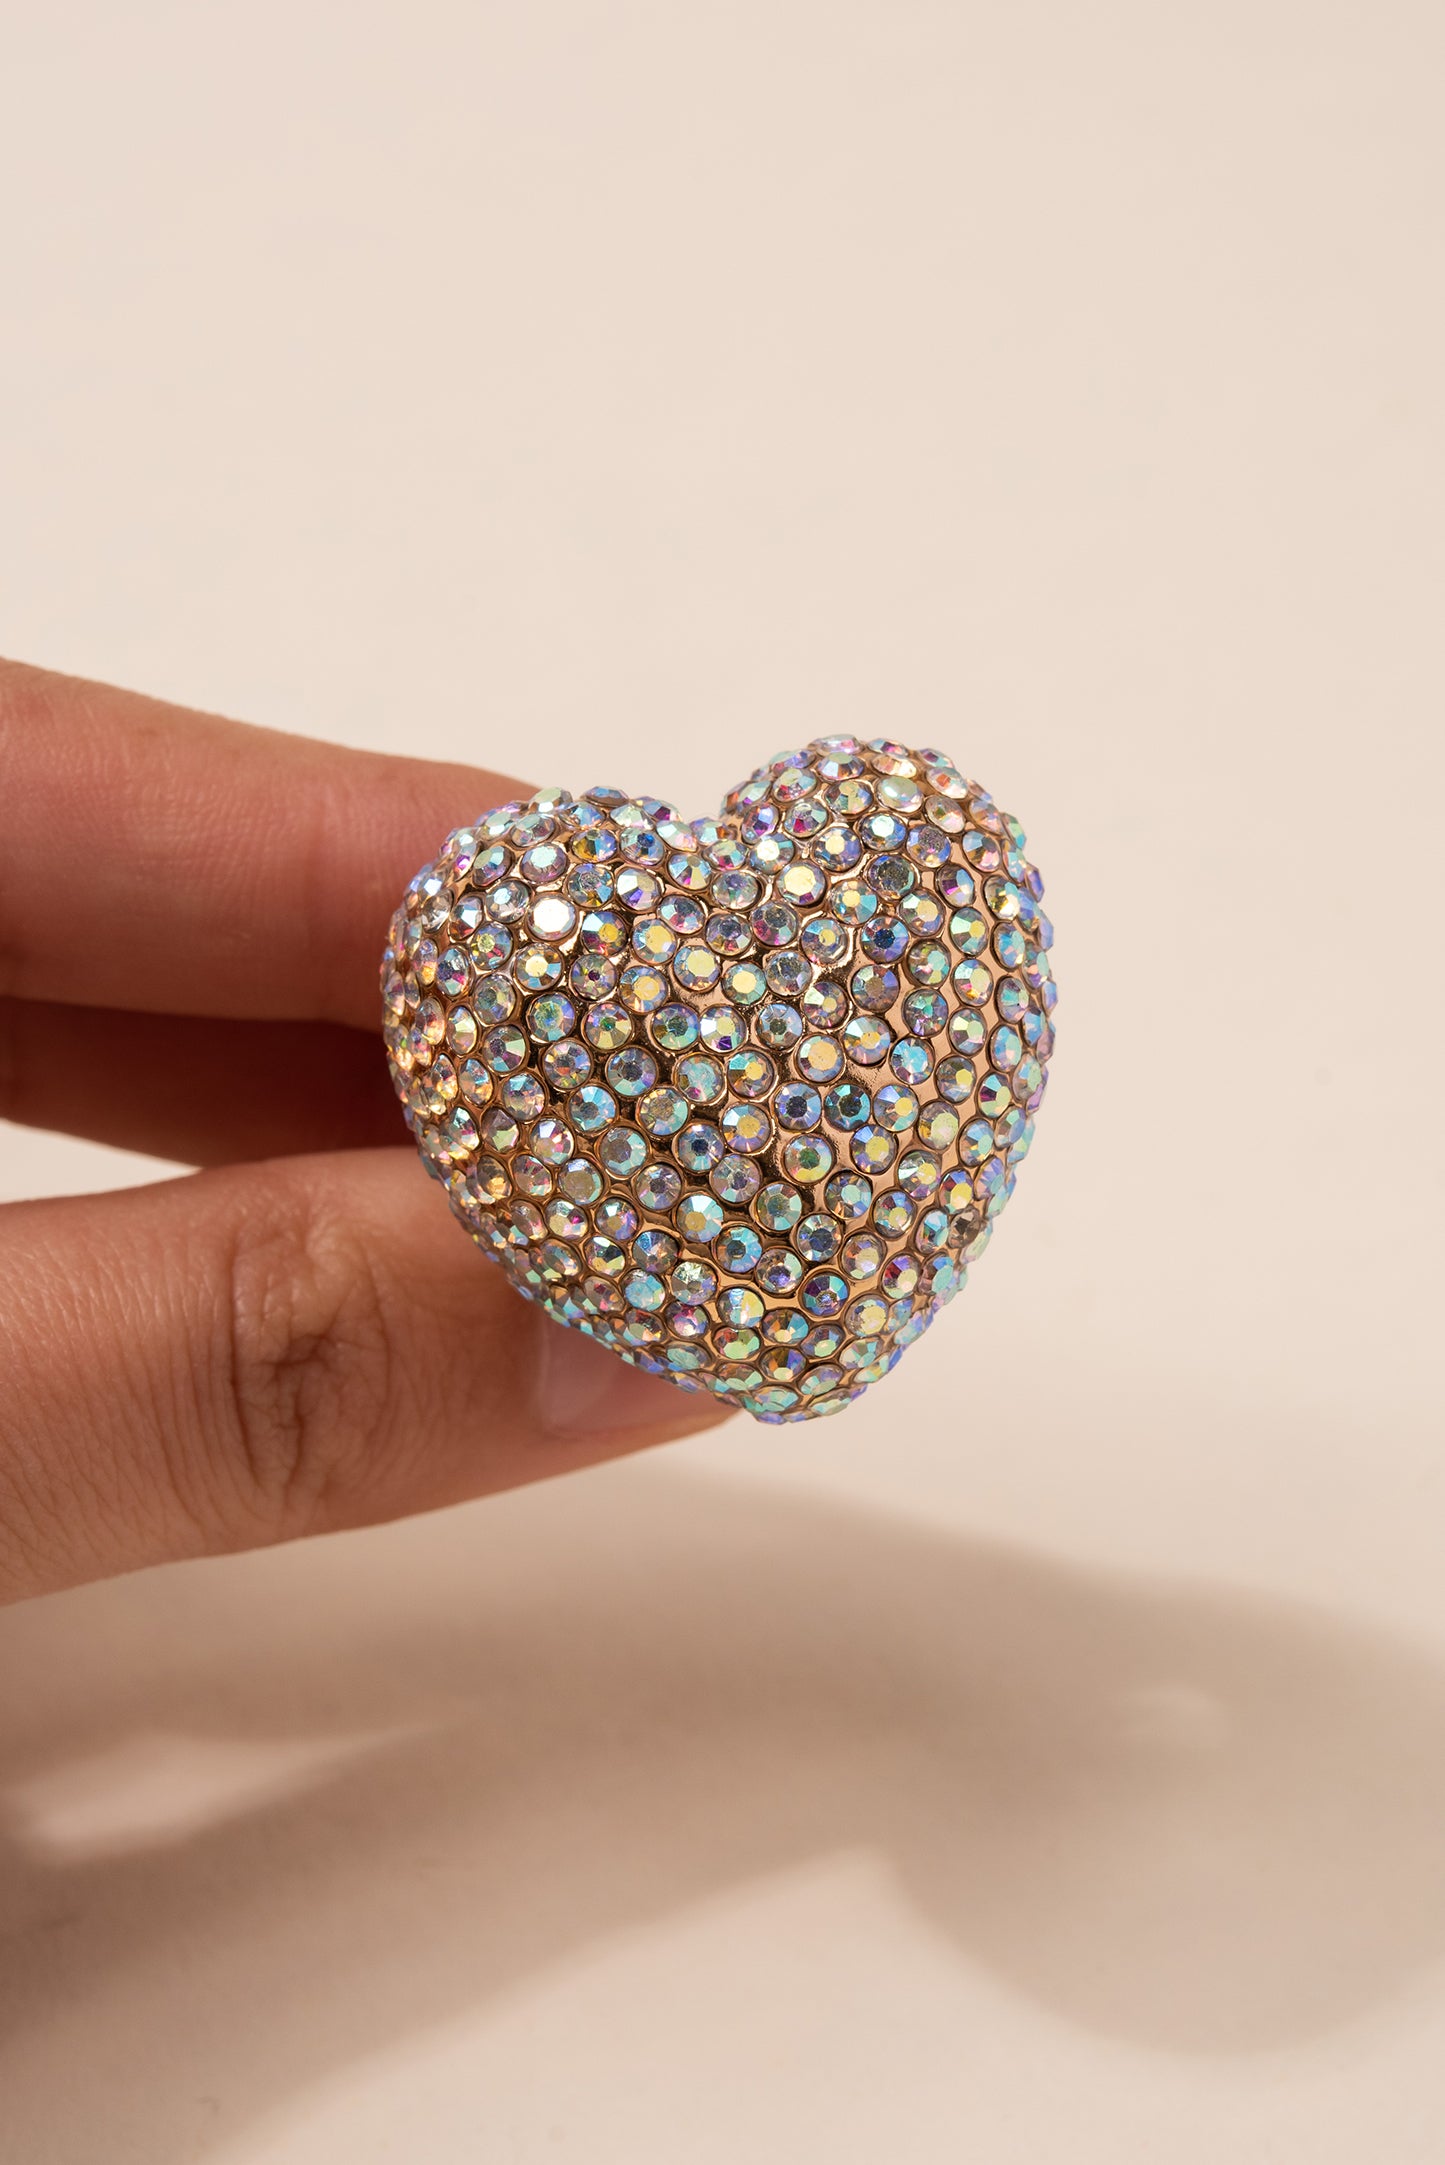 Liz Rhinestone Heart Ring - Iridescent